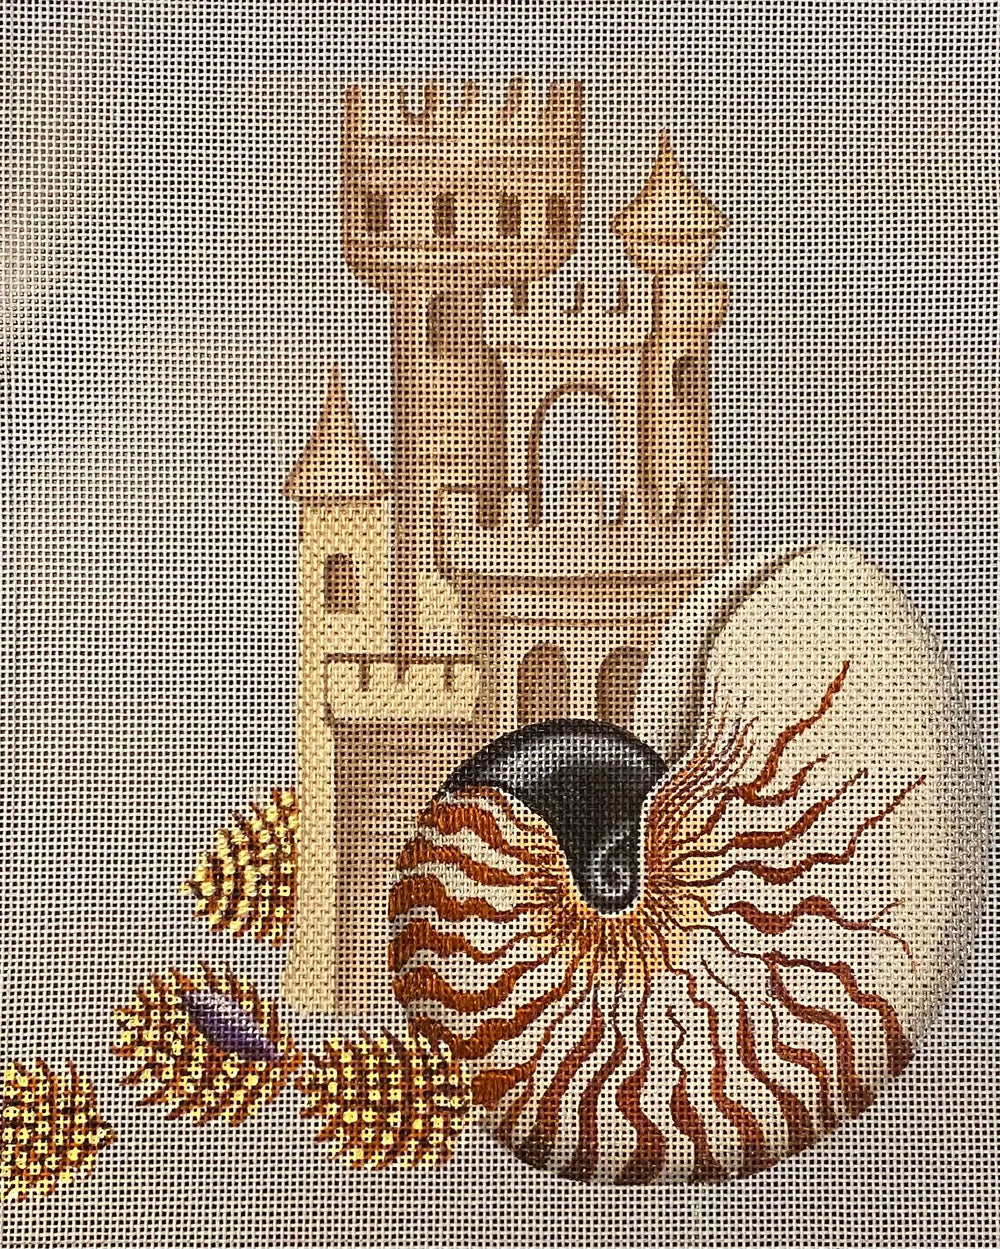 Chambered Nautilus - some stitching